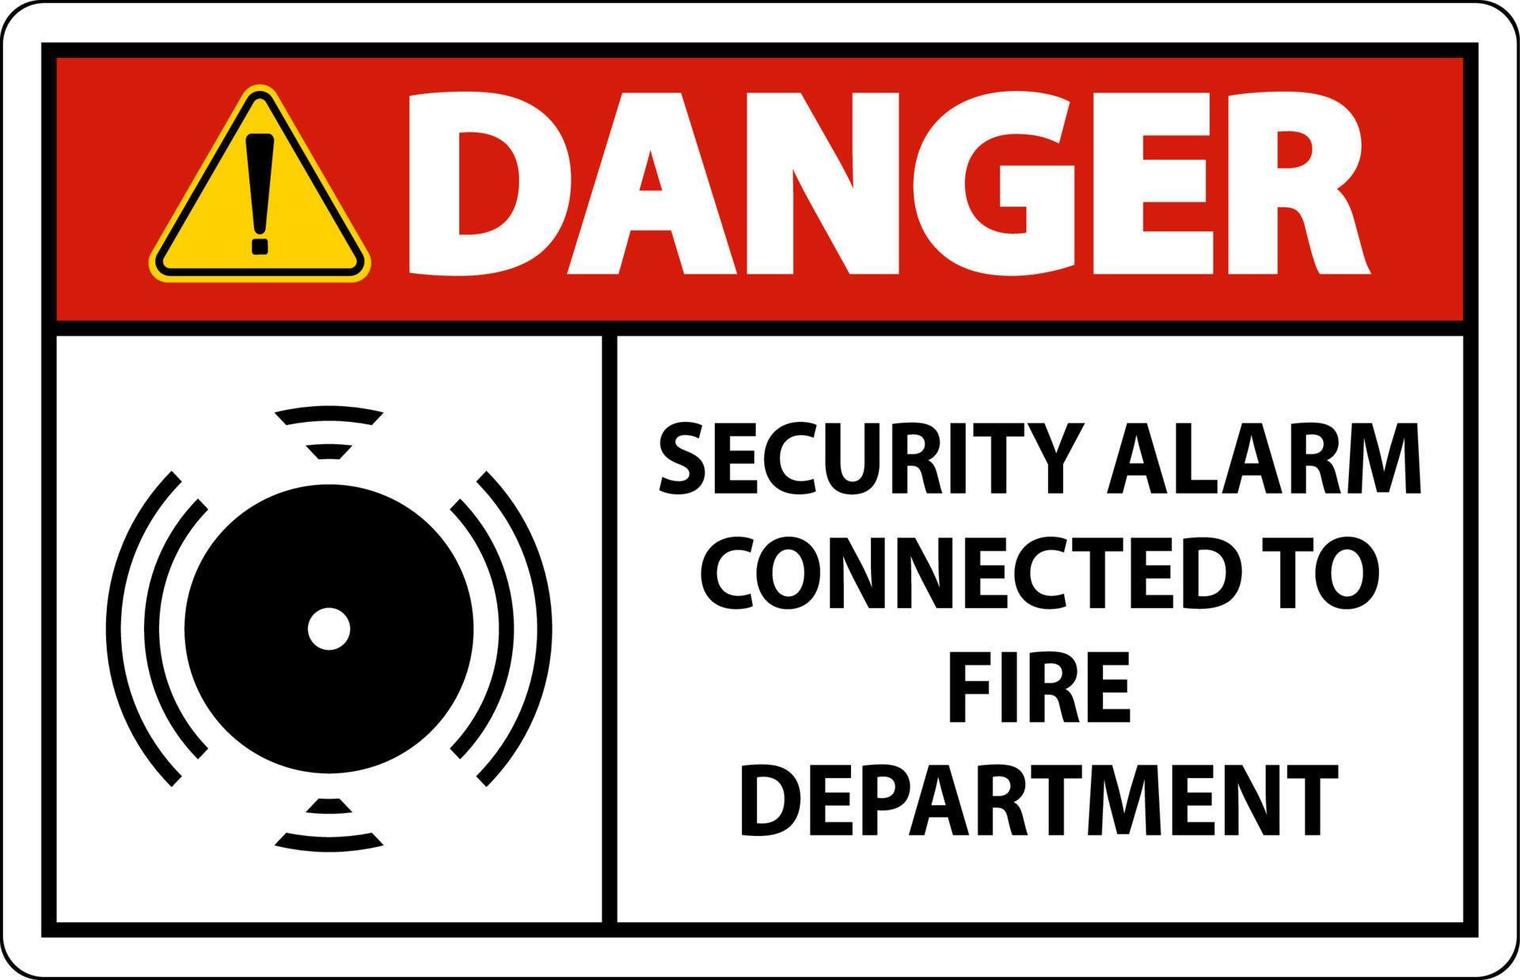 señal de alarma de seguridad alarma de seguridad conectada al departamento de bomberos vector